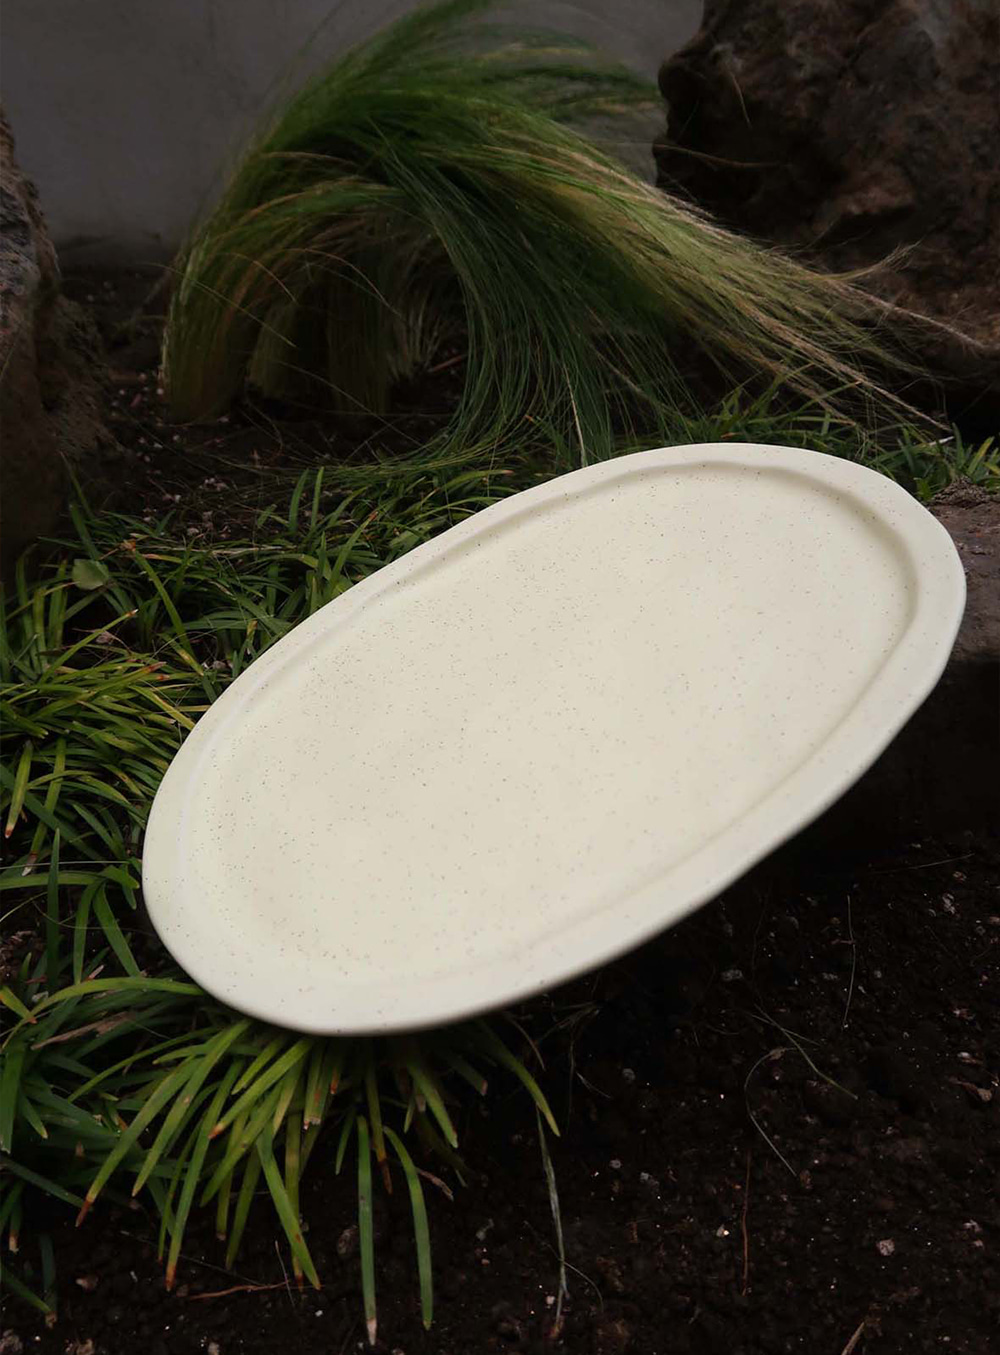 수풀 - Ceramic sand oval plate